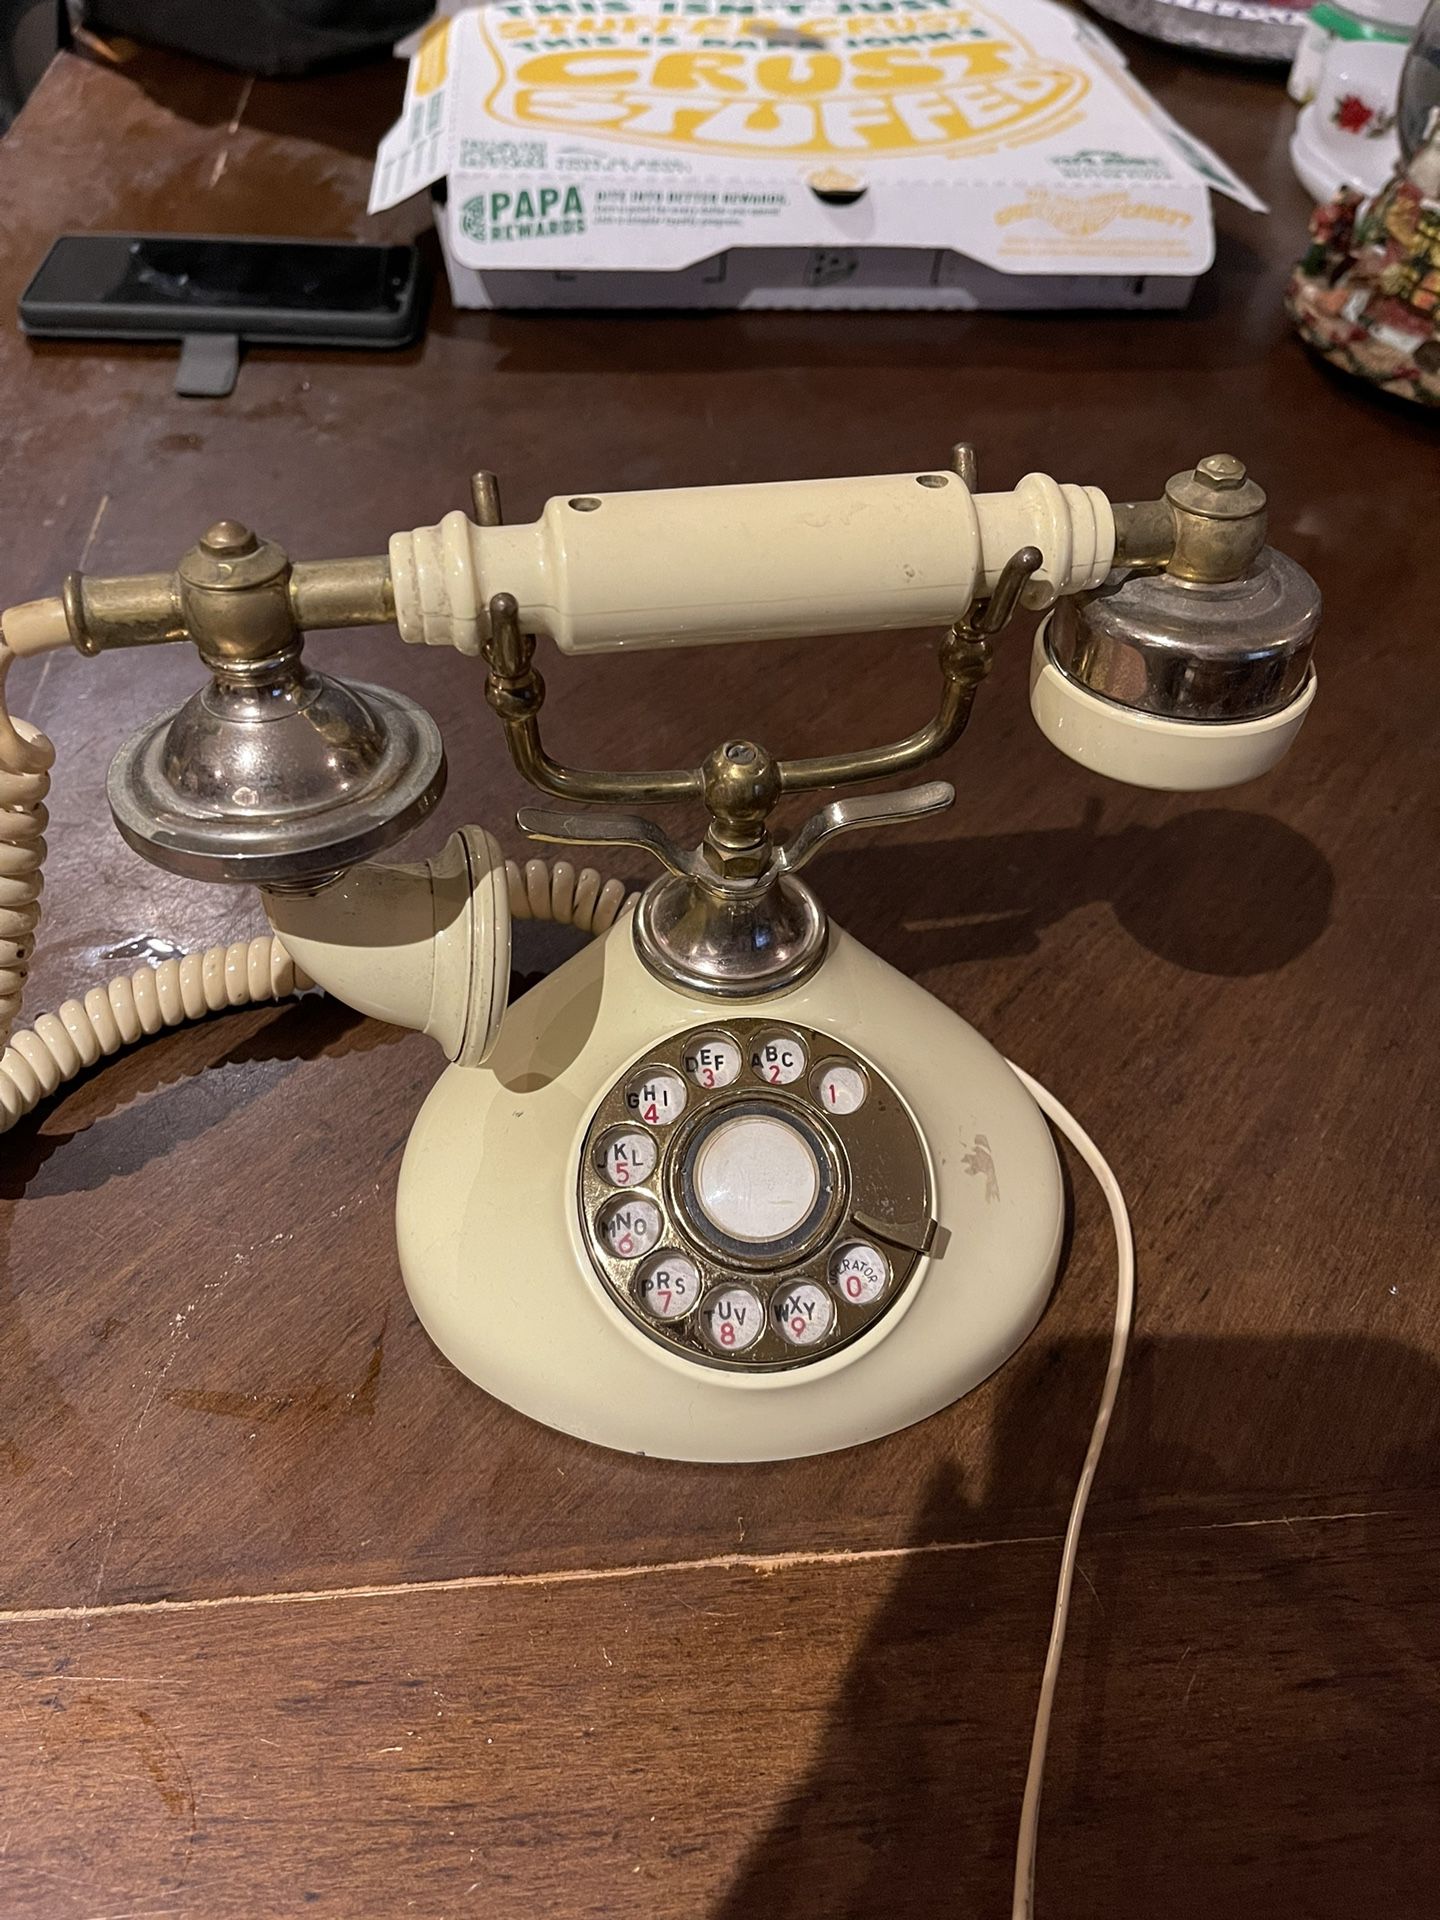 Teléfono Antique 